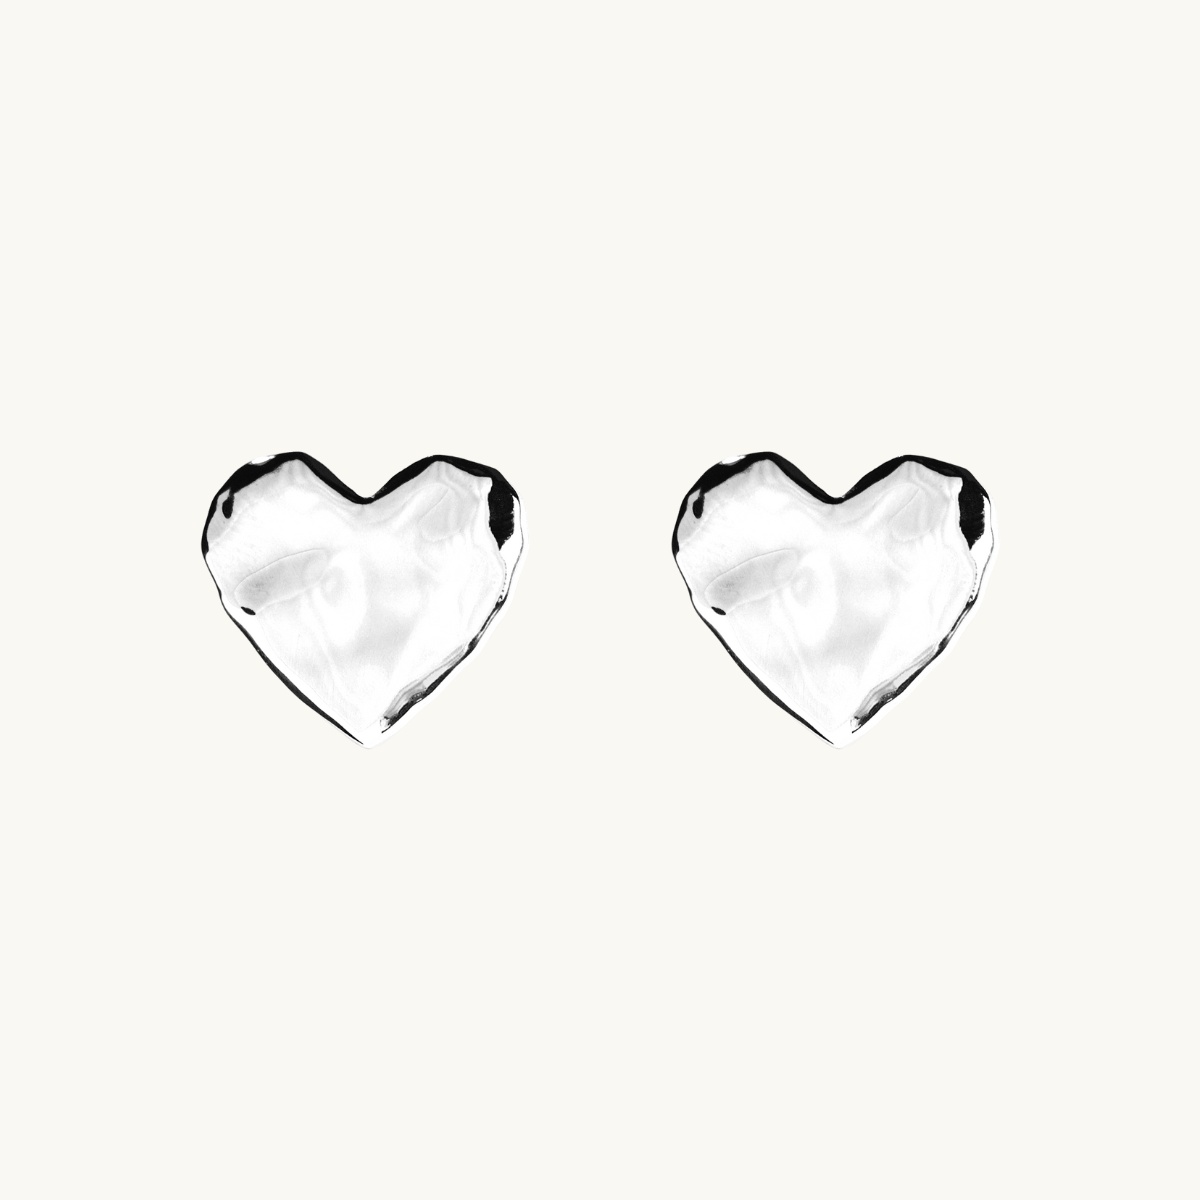 Heart earrings in silver